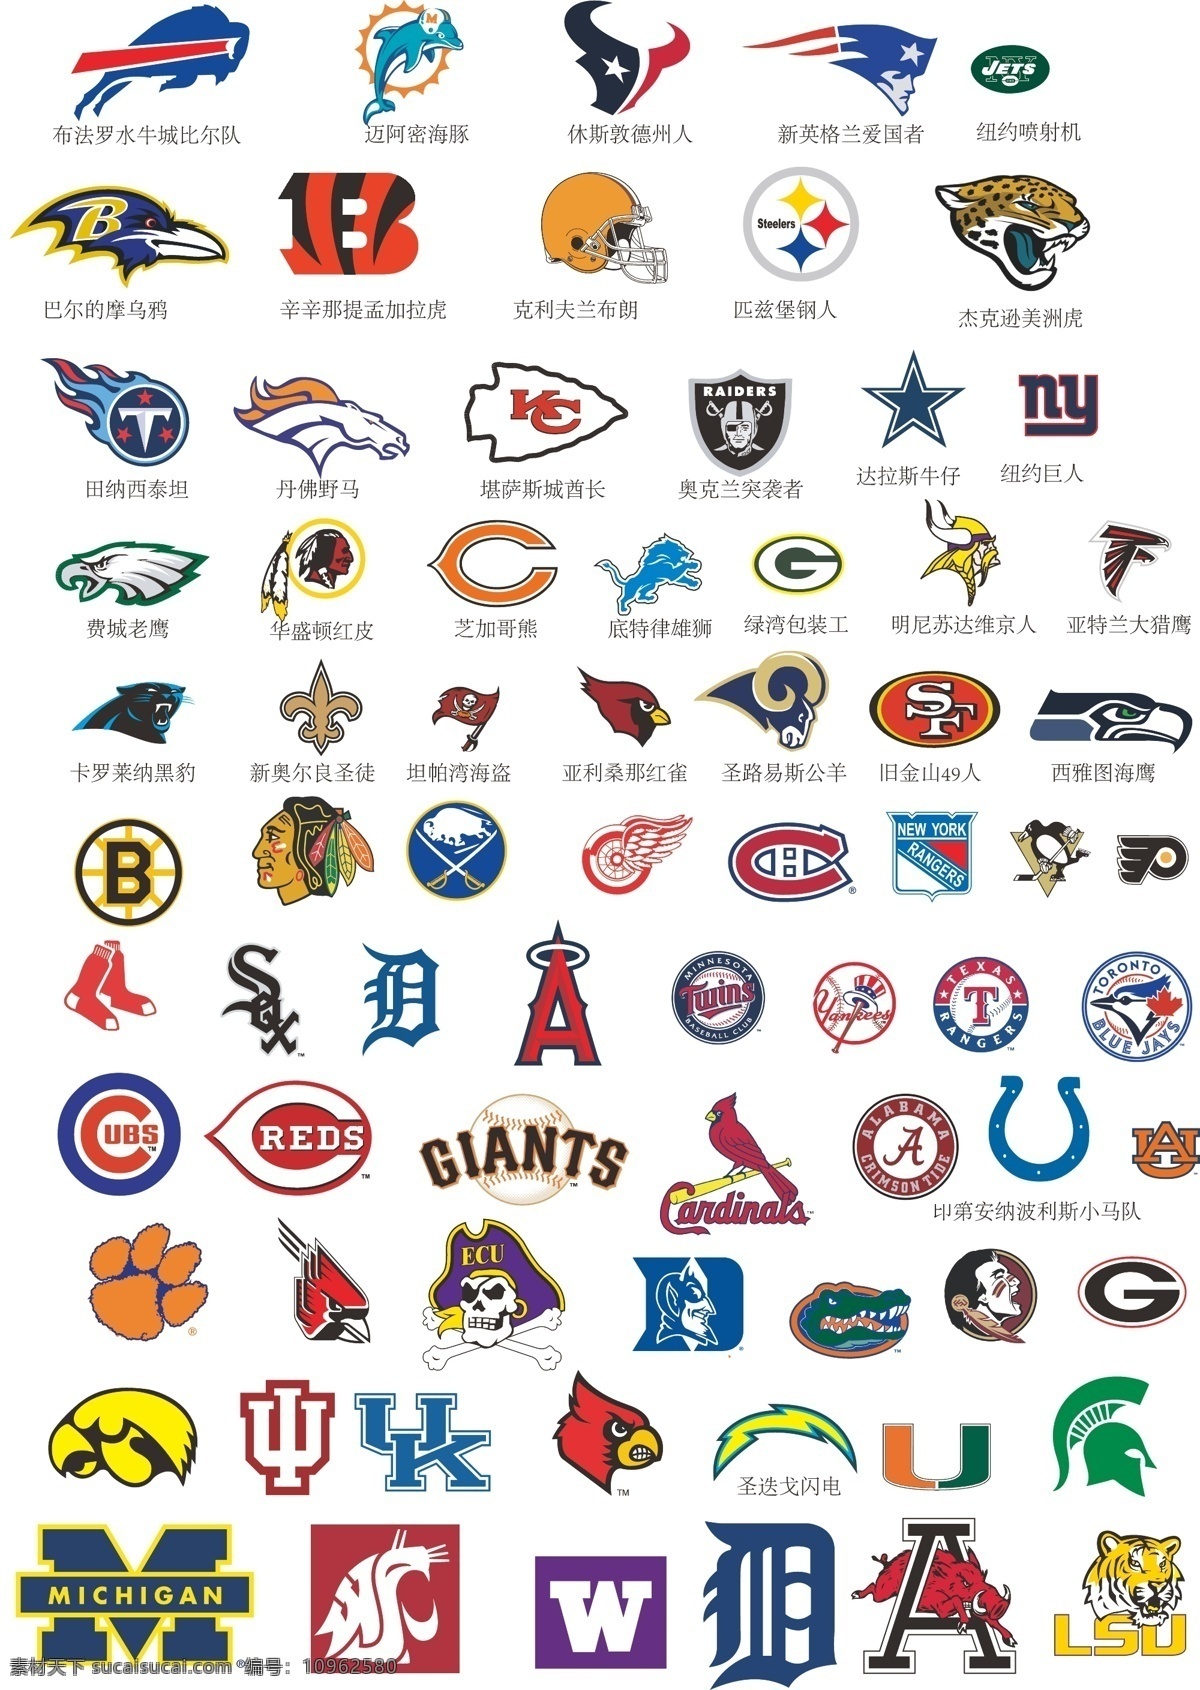 橄榄球队标志 美国篮球 美国 球队 logo 冰球队标志 橄榄球标志 ncaa 十大联盟 美国球队标志 标志图标 公共标识标志